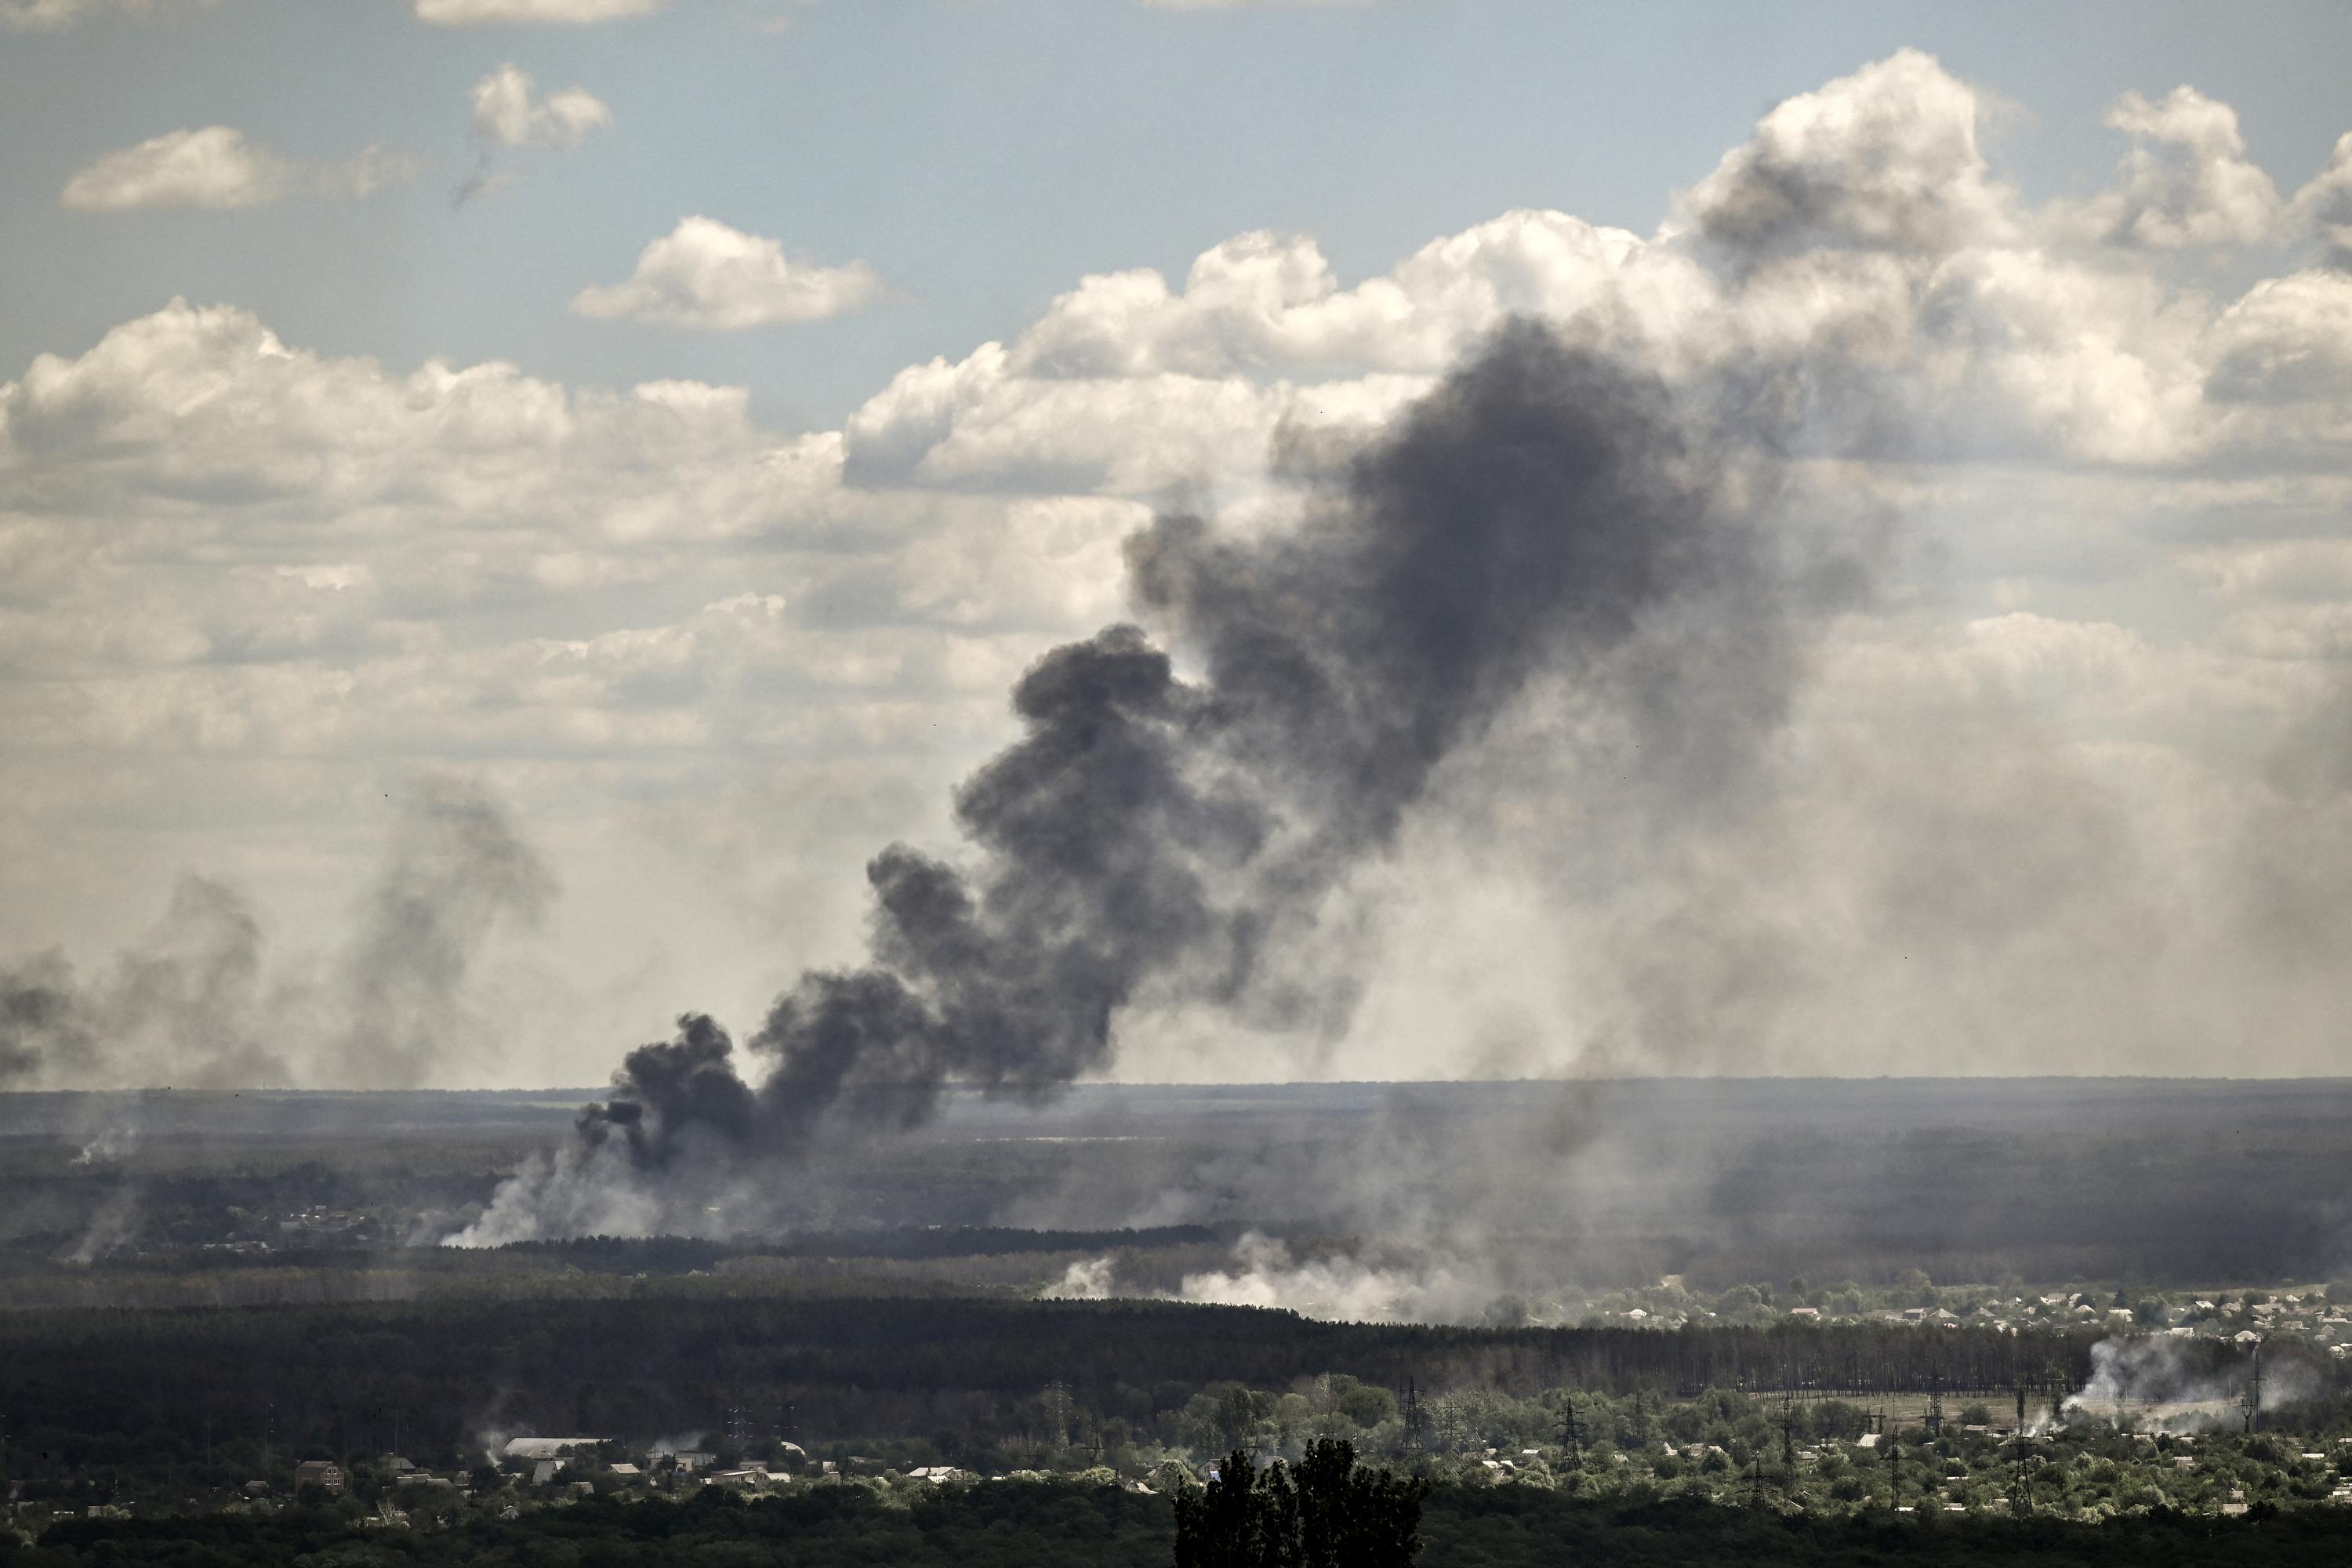 De la fumée s'élève après un bombardement dans la ville de Severodonetsk, dans la région de Donbas, dans l'est de l'Ukraine, le 7 juin 2022 [AFP - ARIS MESSINIS]